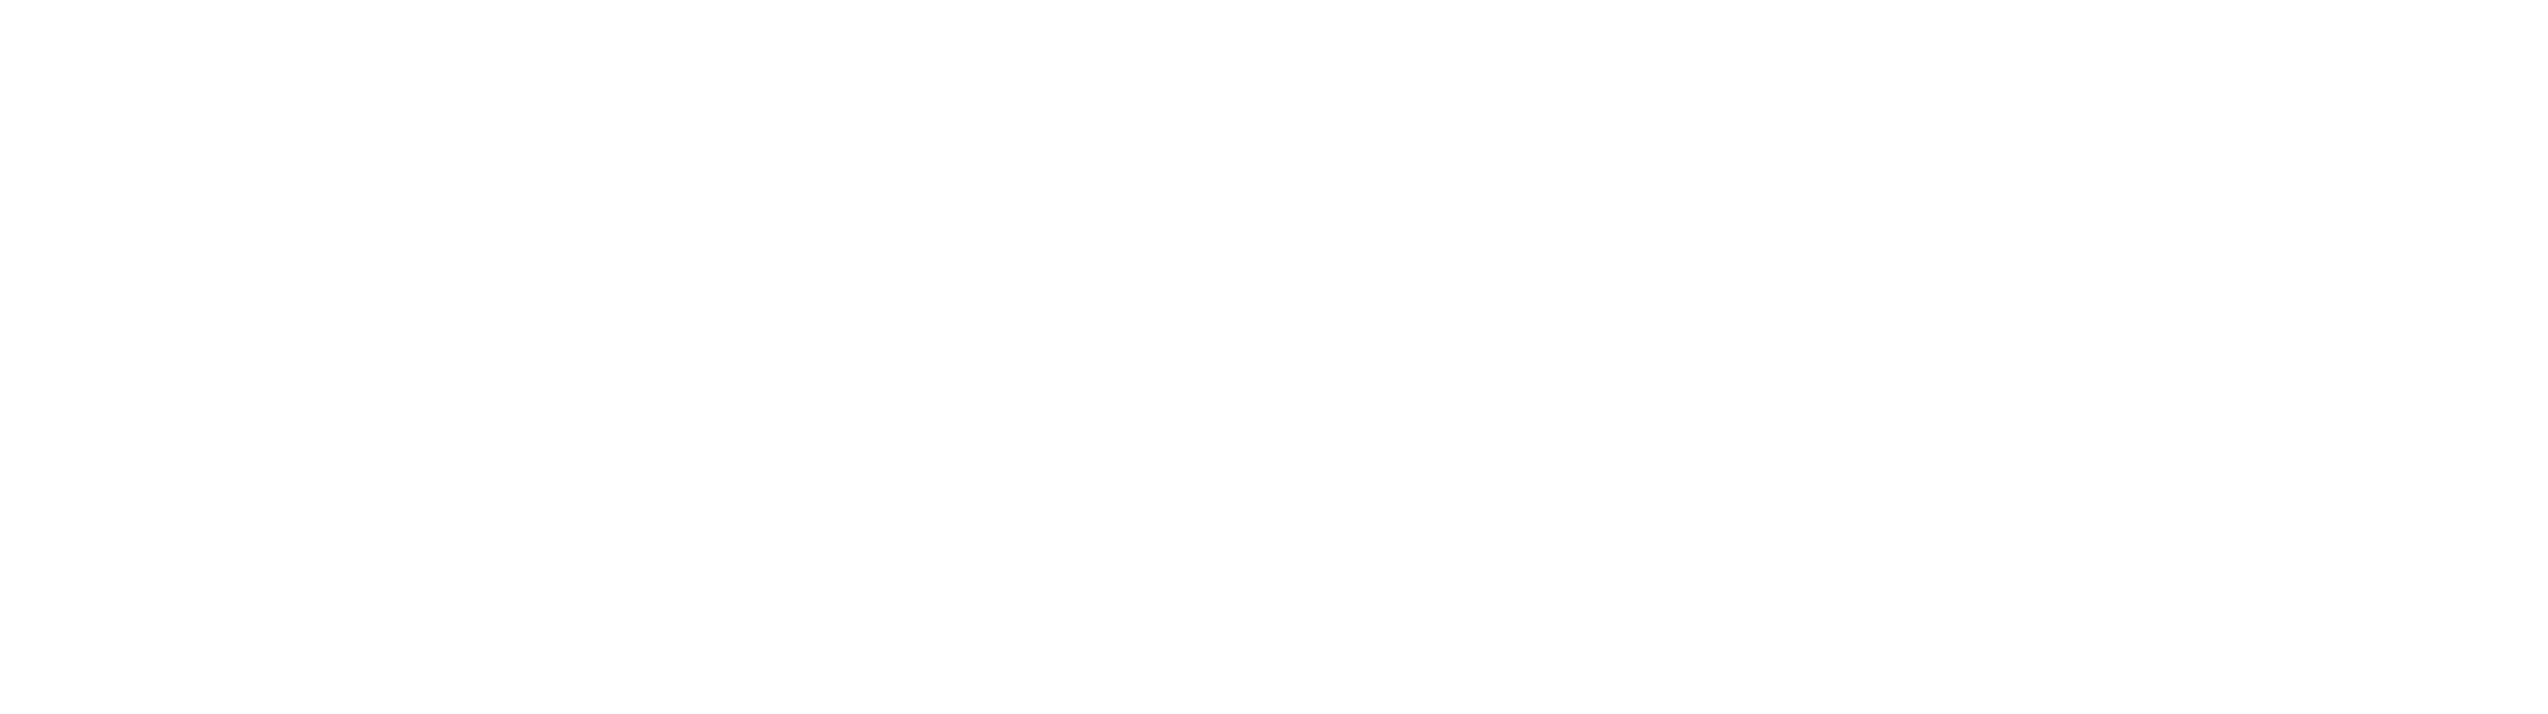 Our Coast, Our Future